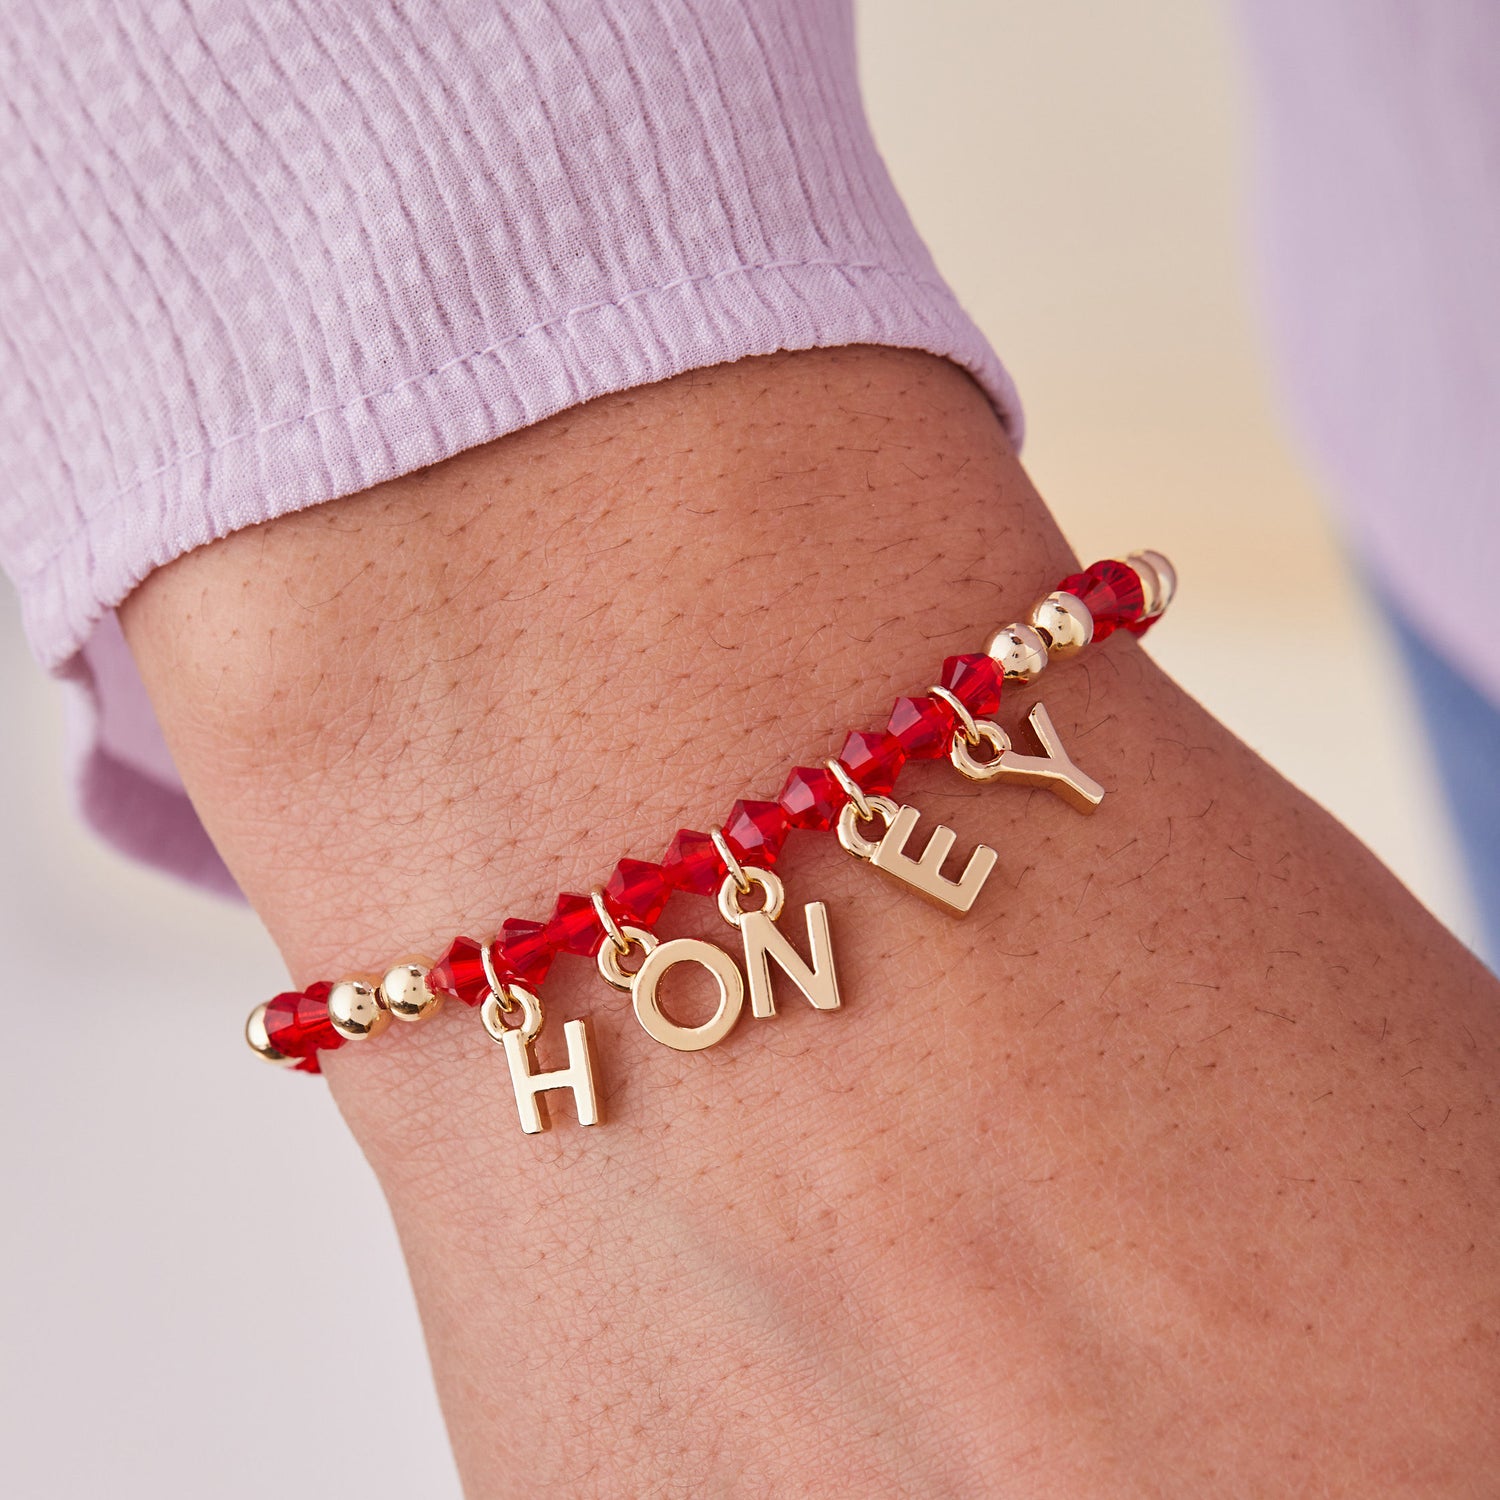 'Honey' Stretch Charm Bracelet